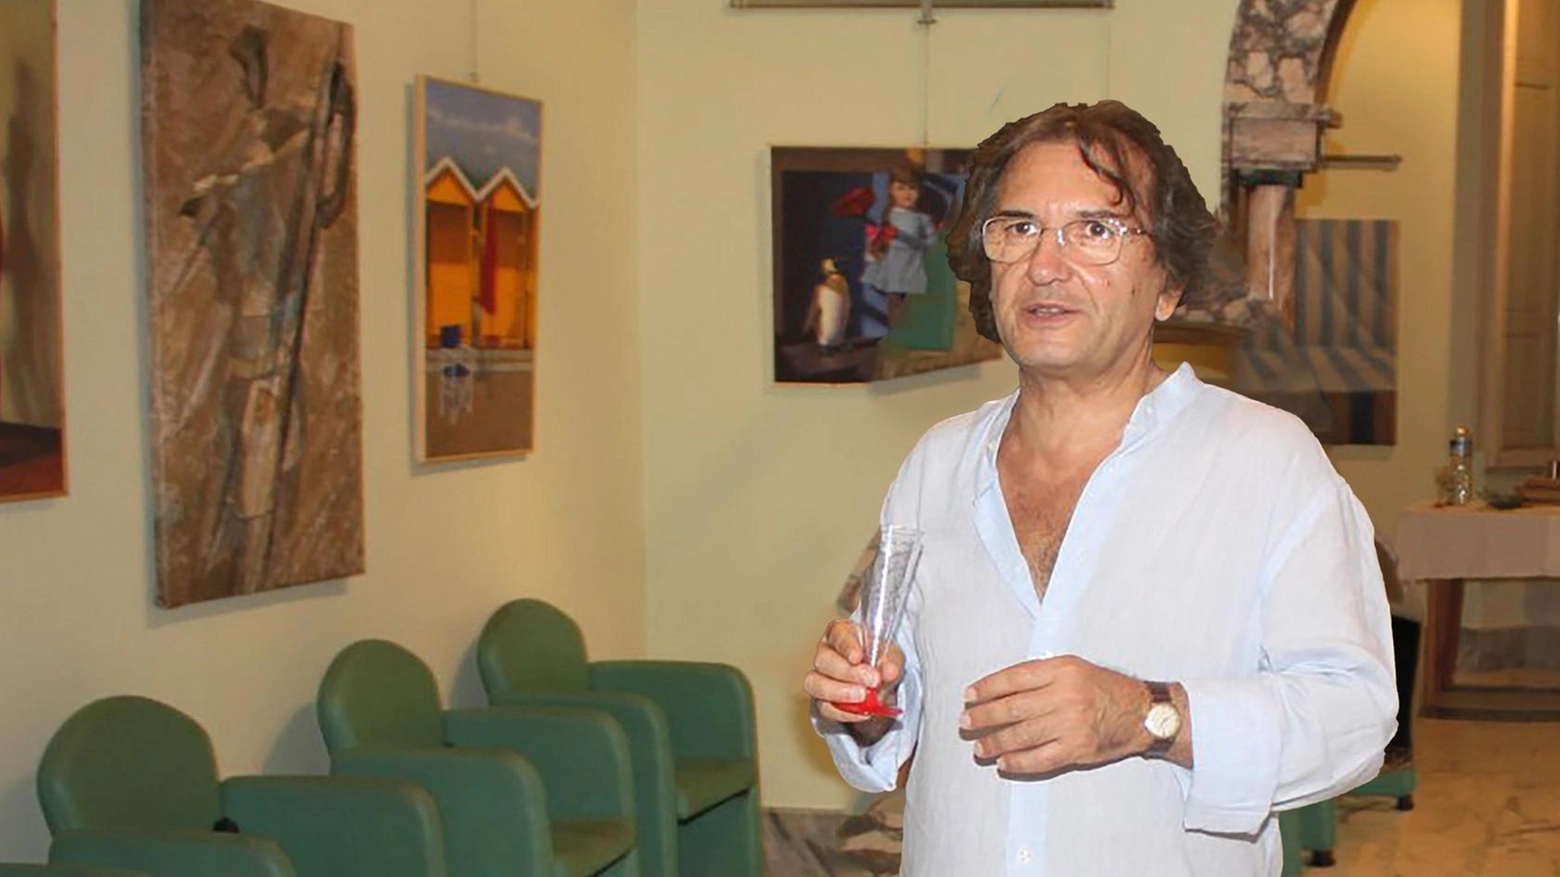 Domani, alle 18.30, si inaugura la mostra di pittura di Oronzo Luciano Vittorio Ricci al Convento dei Cappuccini di Massa. L'artista, conosciuto anche come Vladimir Swarovski, esporrà le sue opere fino all'8 agosto.